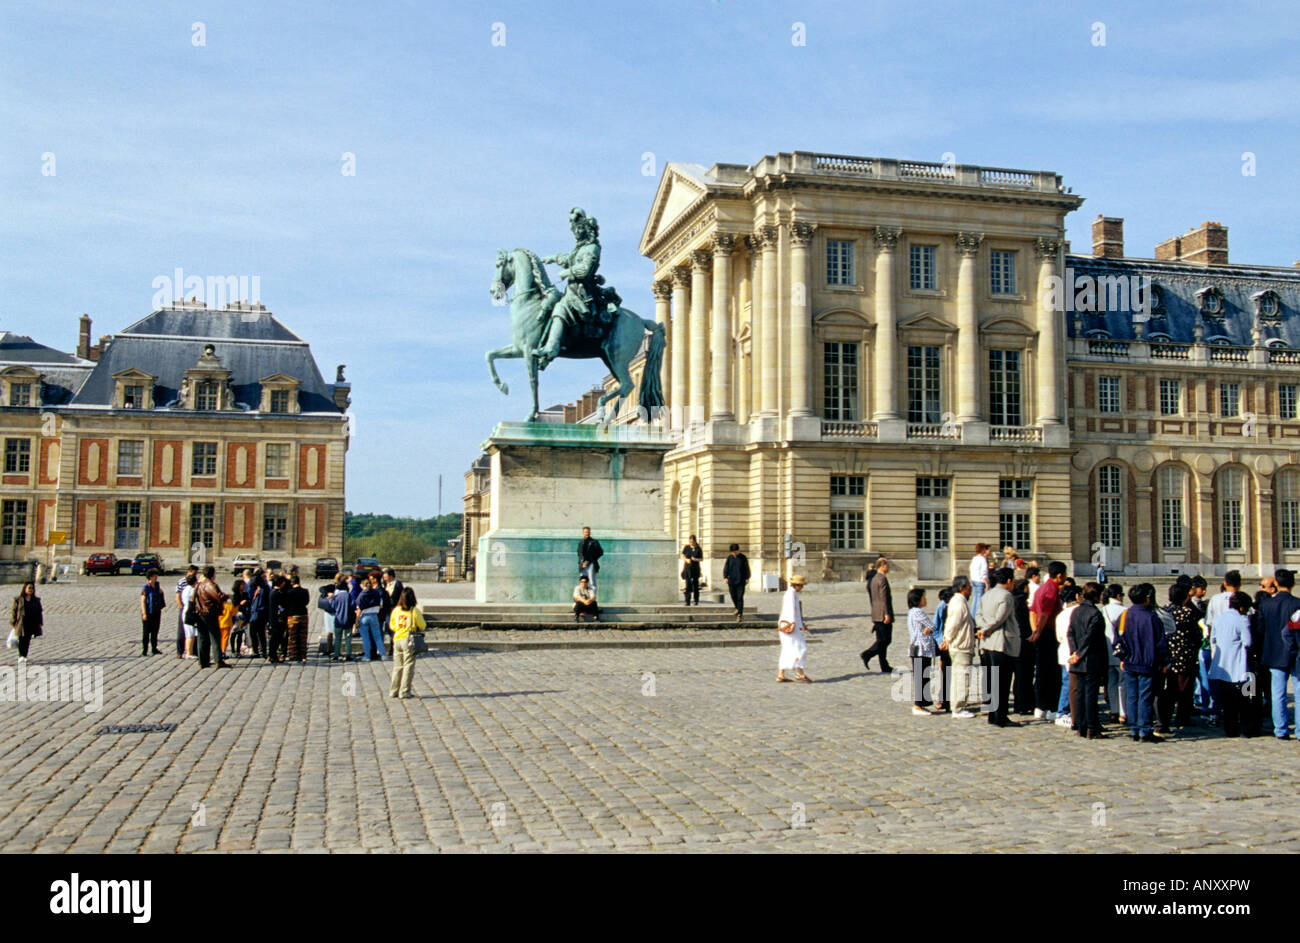 Statue de Louis XIV au château de Versailles, Paris, France Banque D'Images